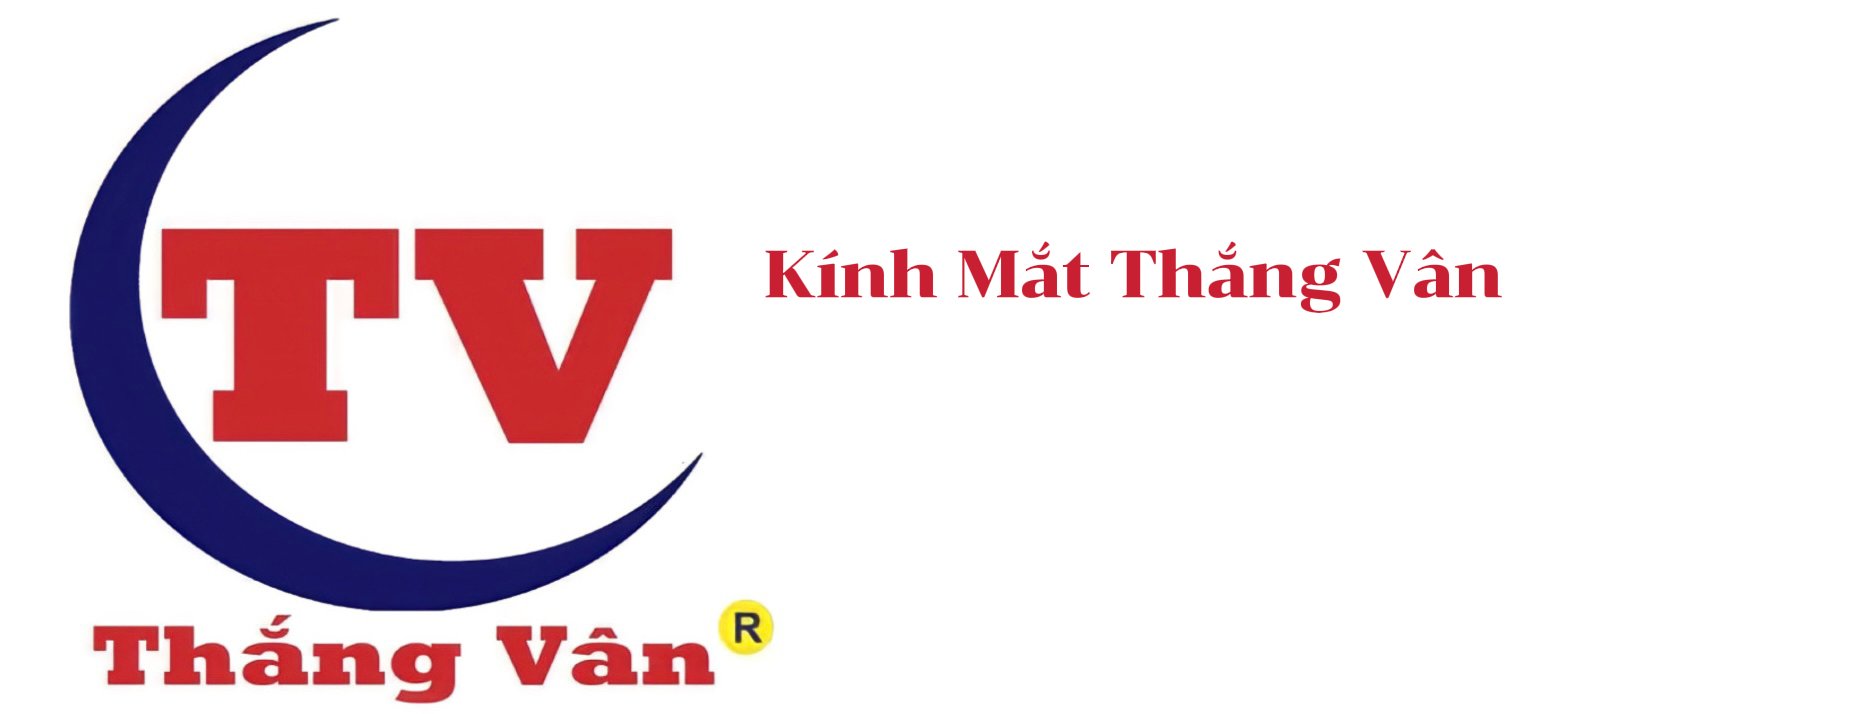 logo kinhmatthangvan